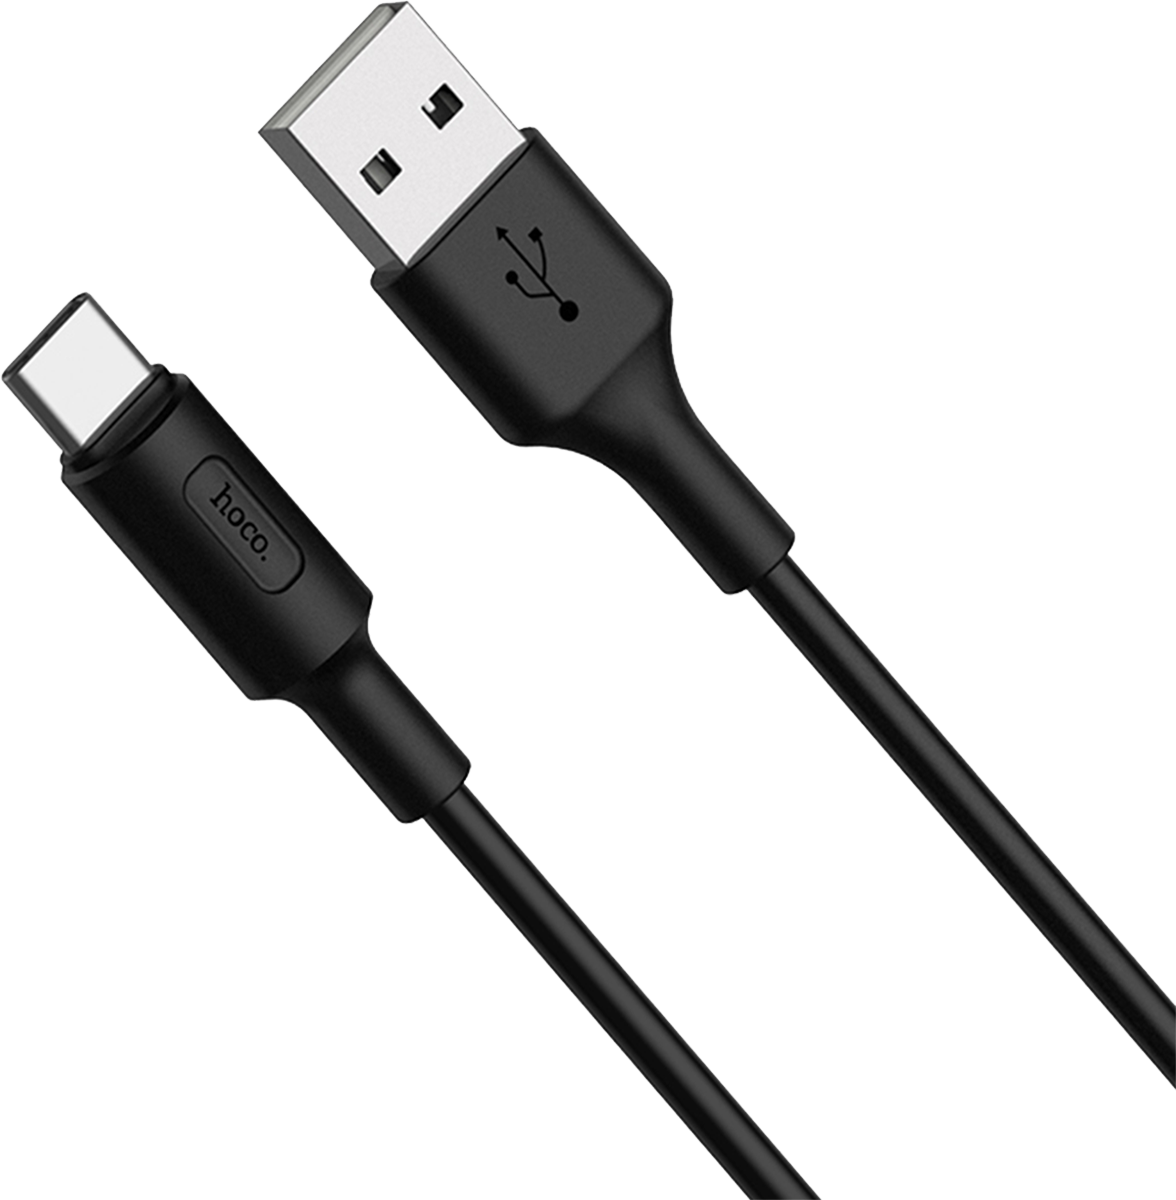 Кабель Hoco RA1 USB to USB-C 1m Black